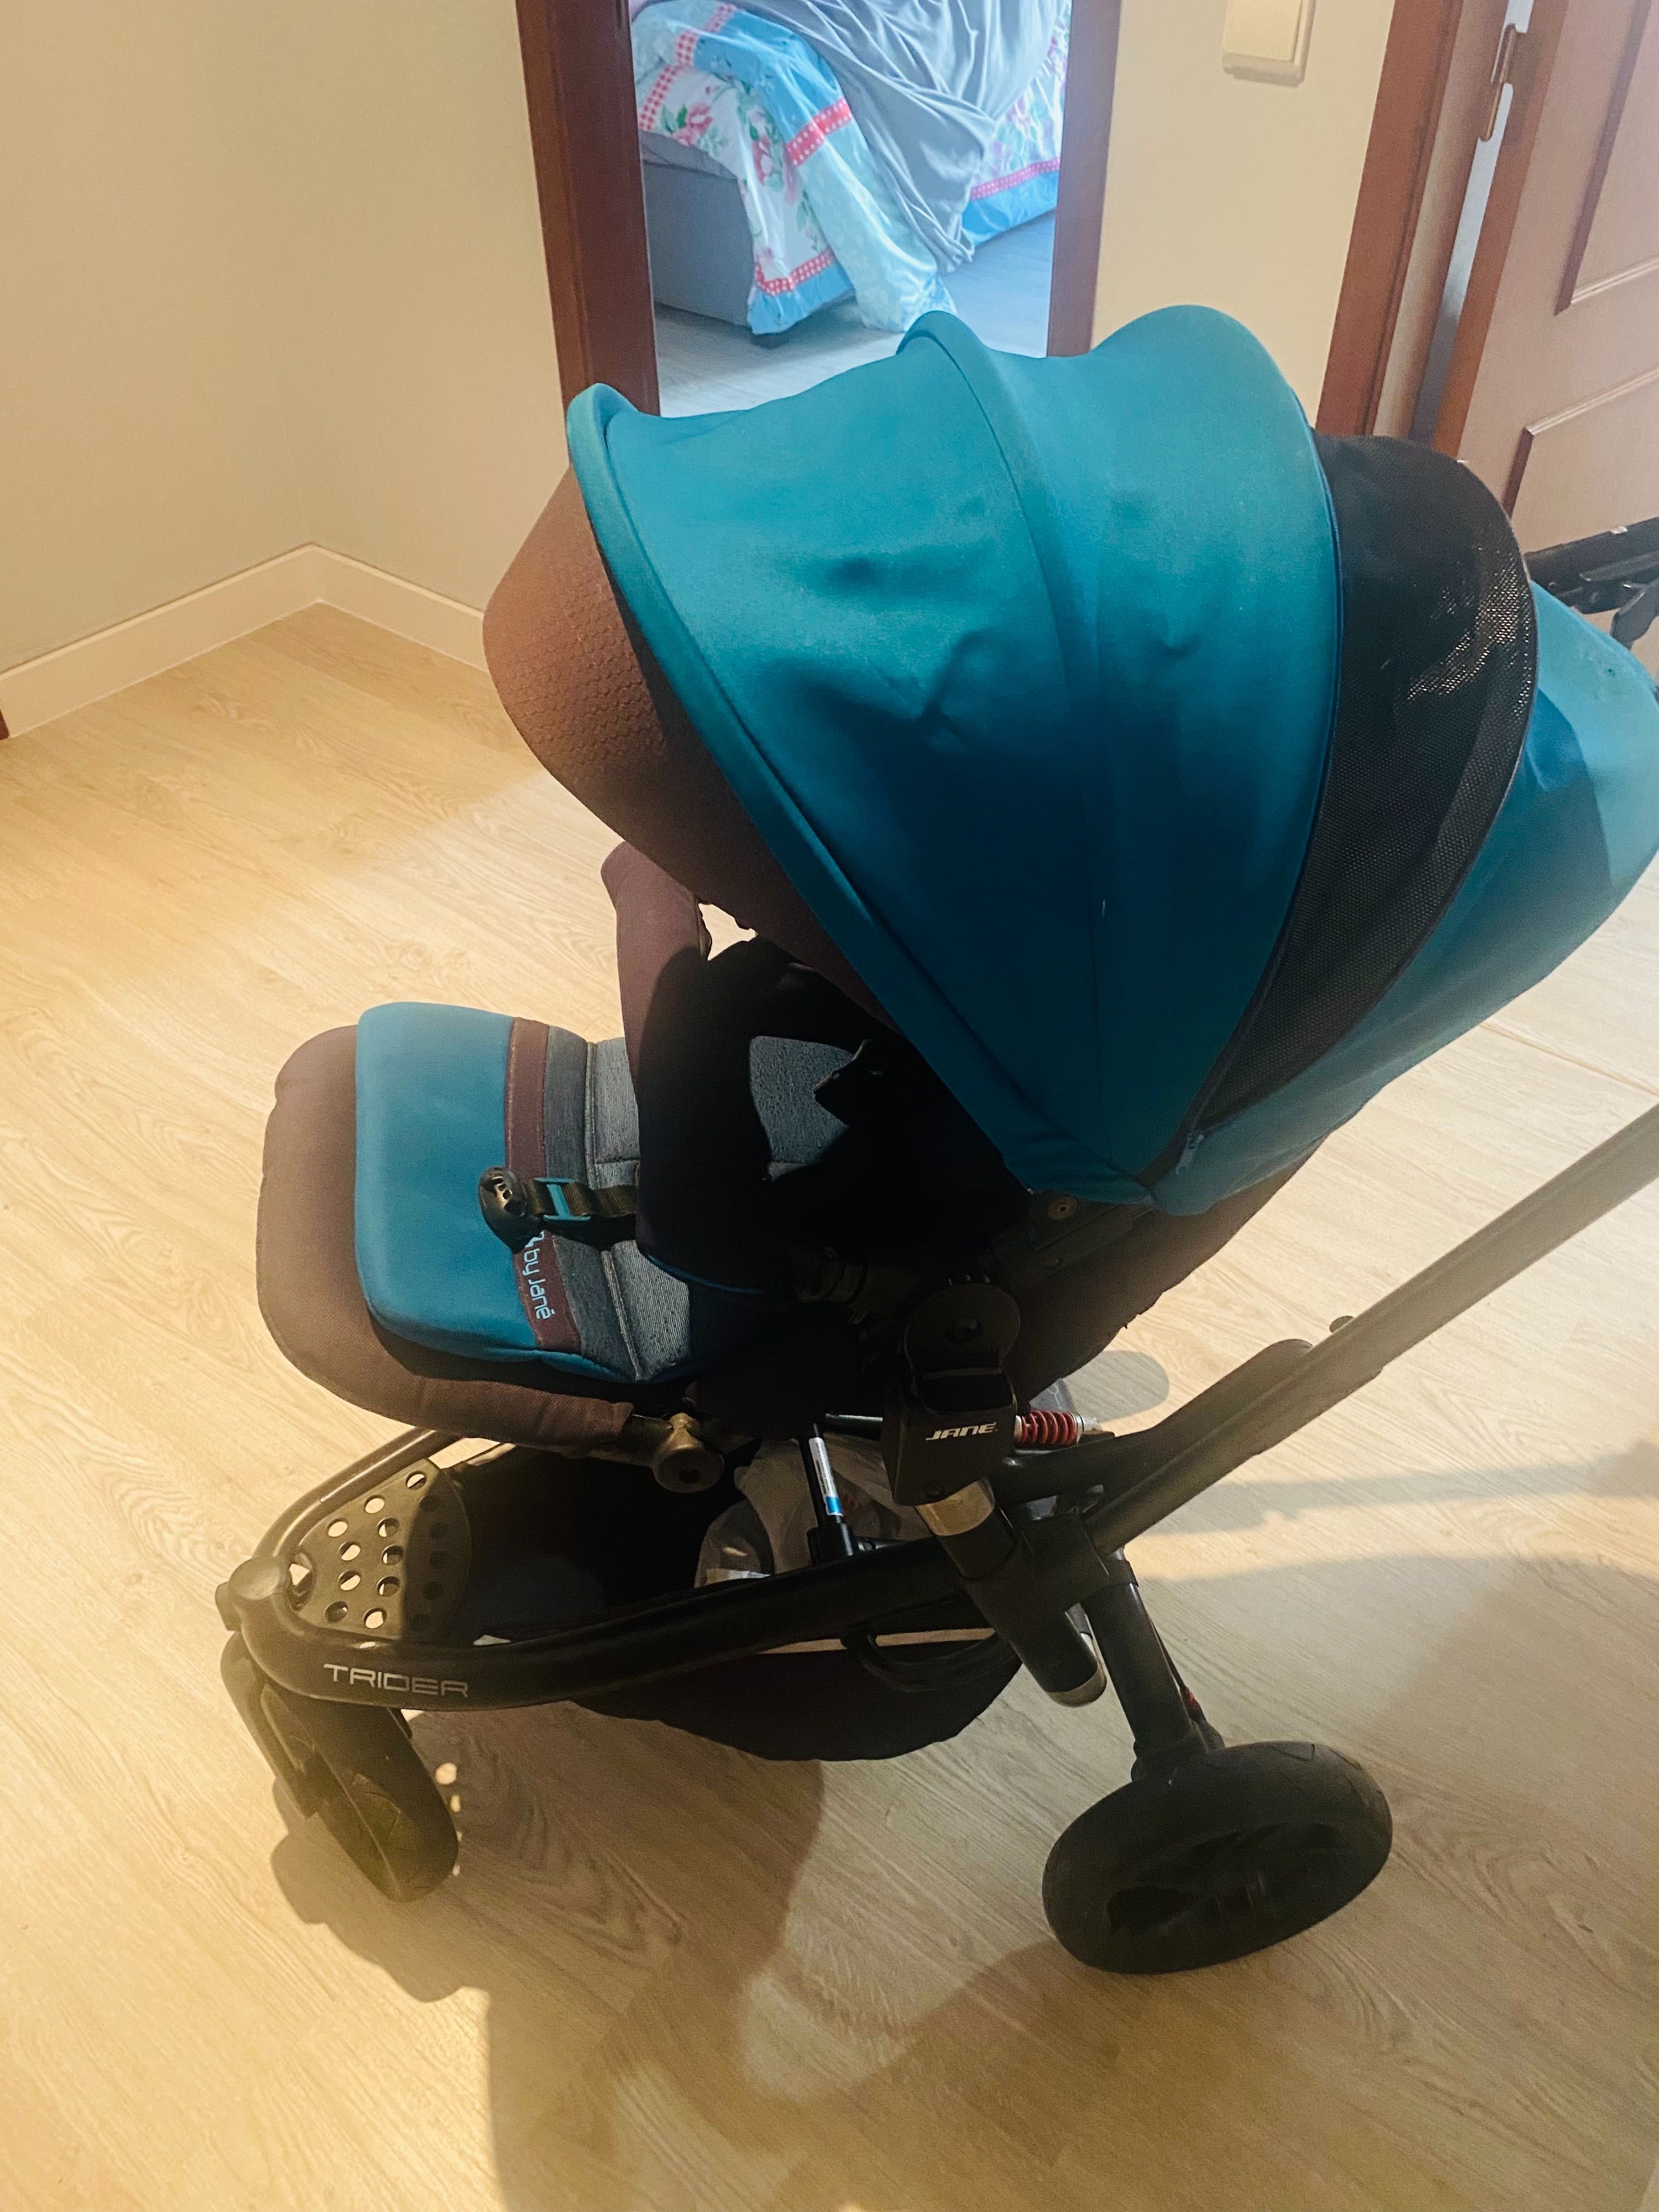 Duo carrinho bebé Jane trider matrix azul turquesa